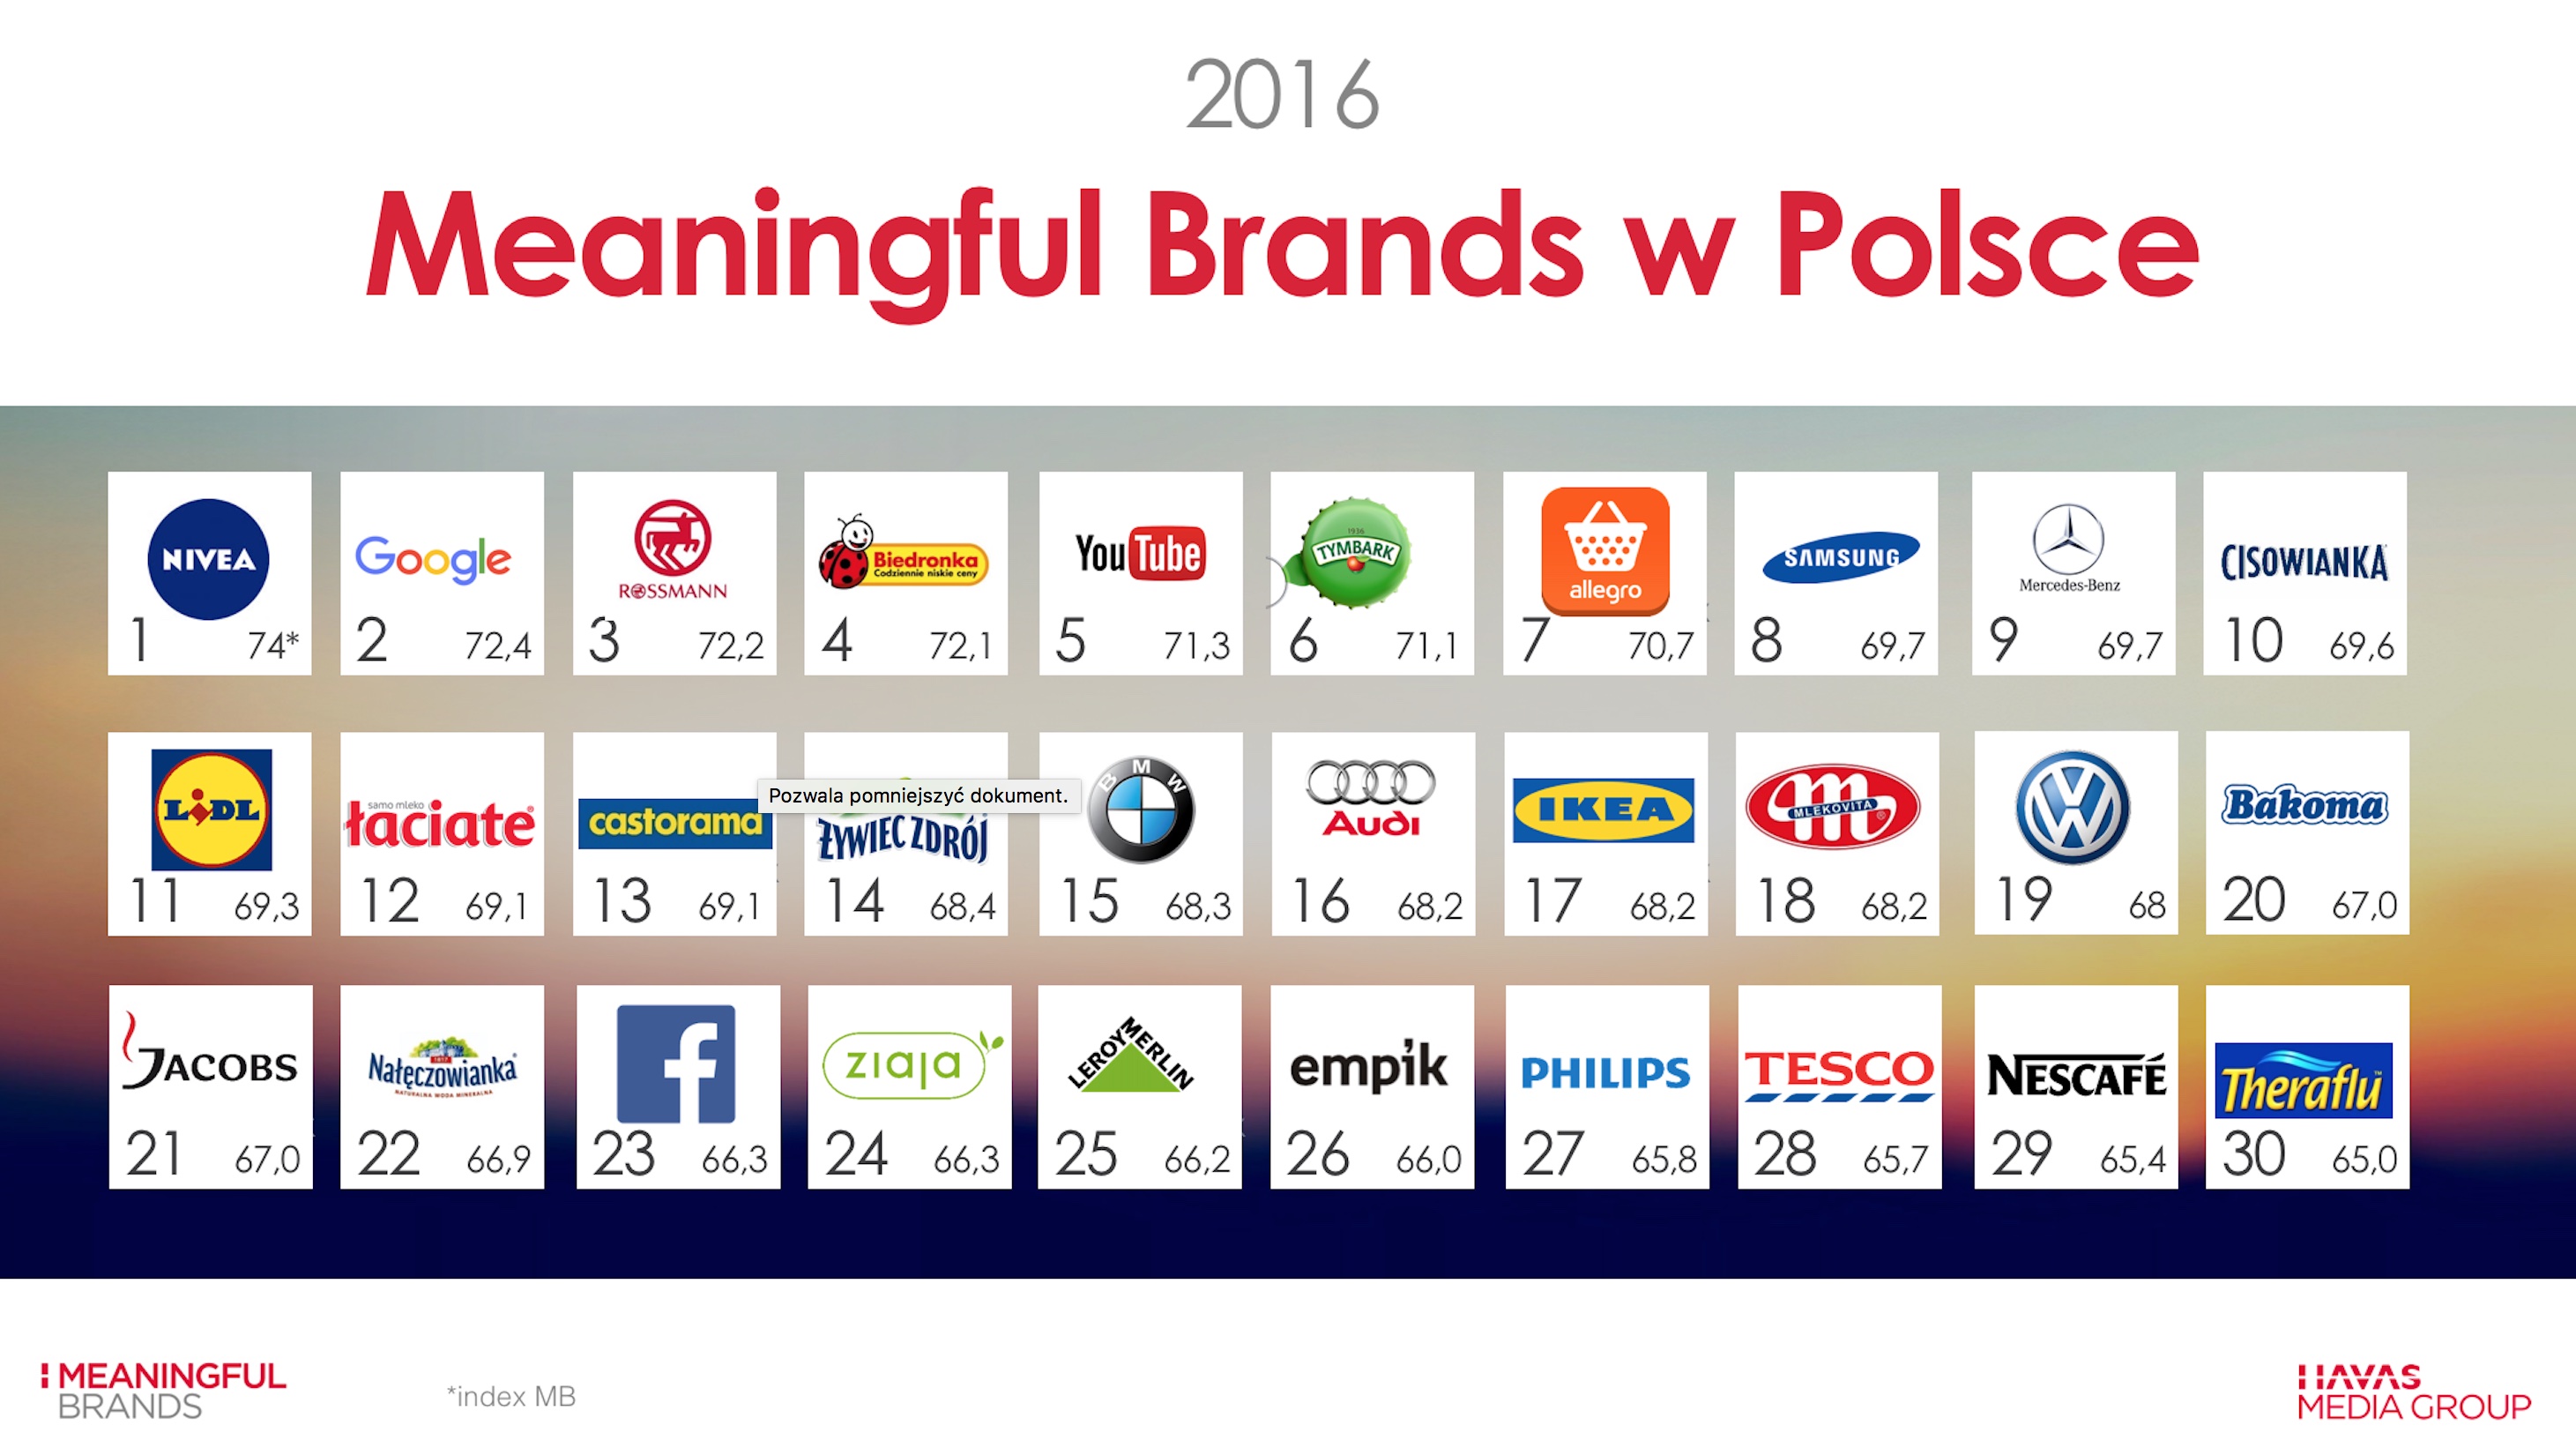 Olbrzymi wzrost wartości marek meaningful brands Badania mediarun meangful brands 2